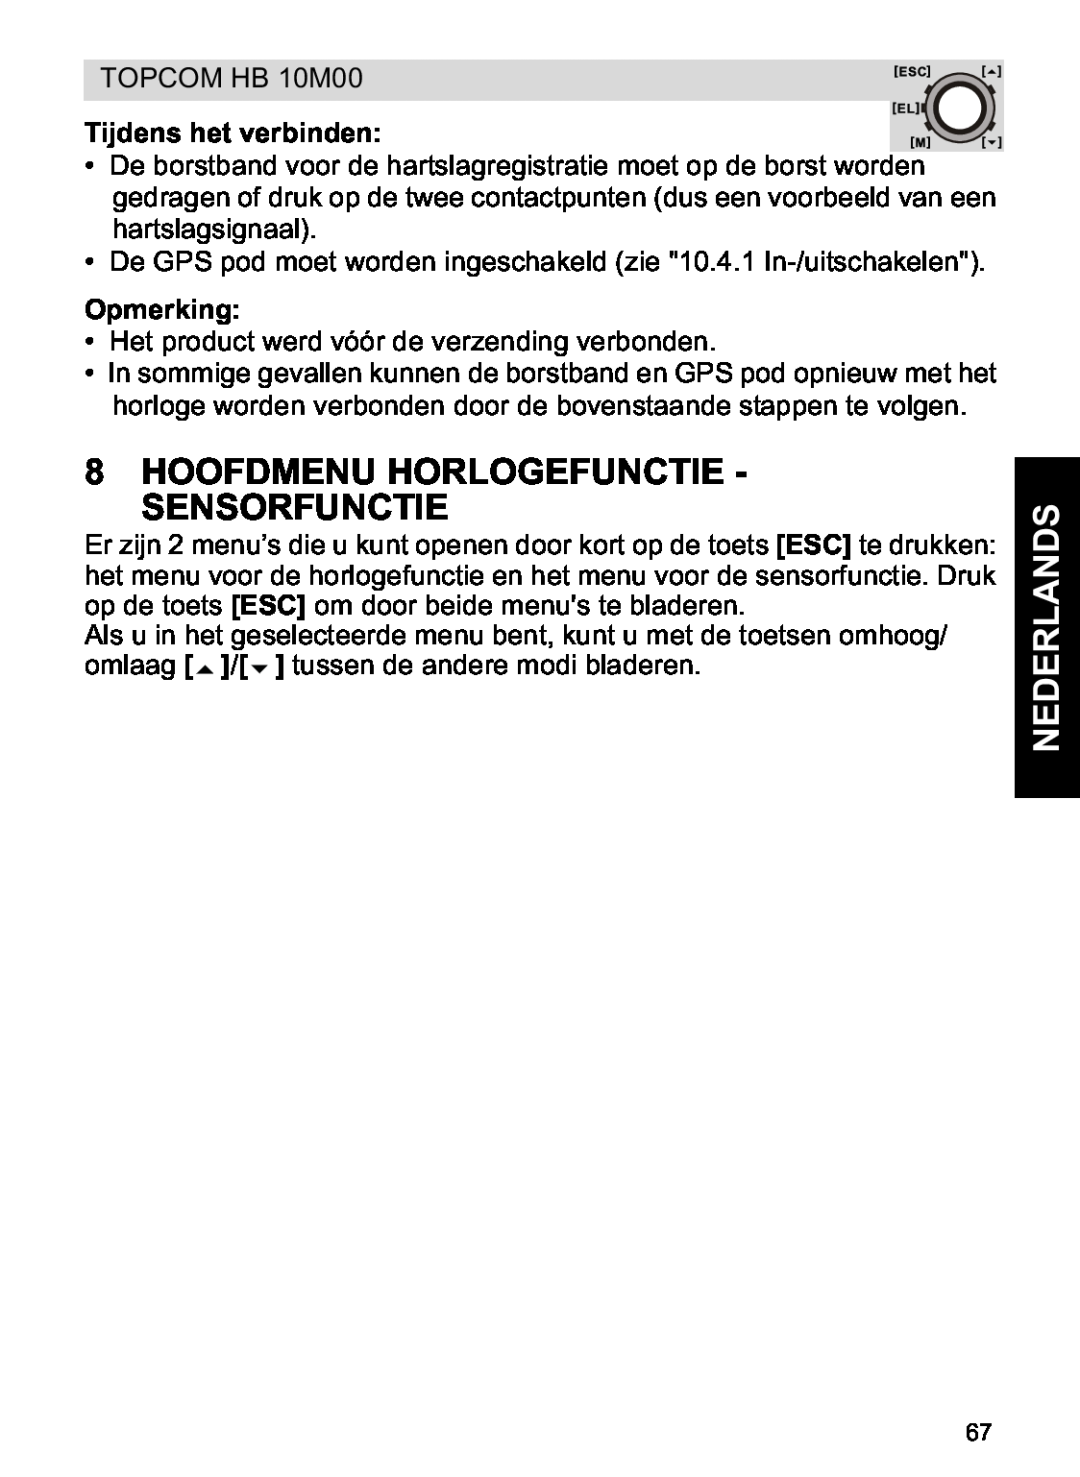 Topcom HB 10M00 manual Hoofdmenu Horlogefunctie - Sensorfunctie, Tijdens het verbinden, Opmerking, Nederlands 